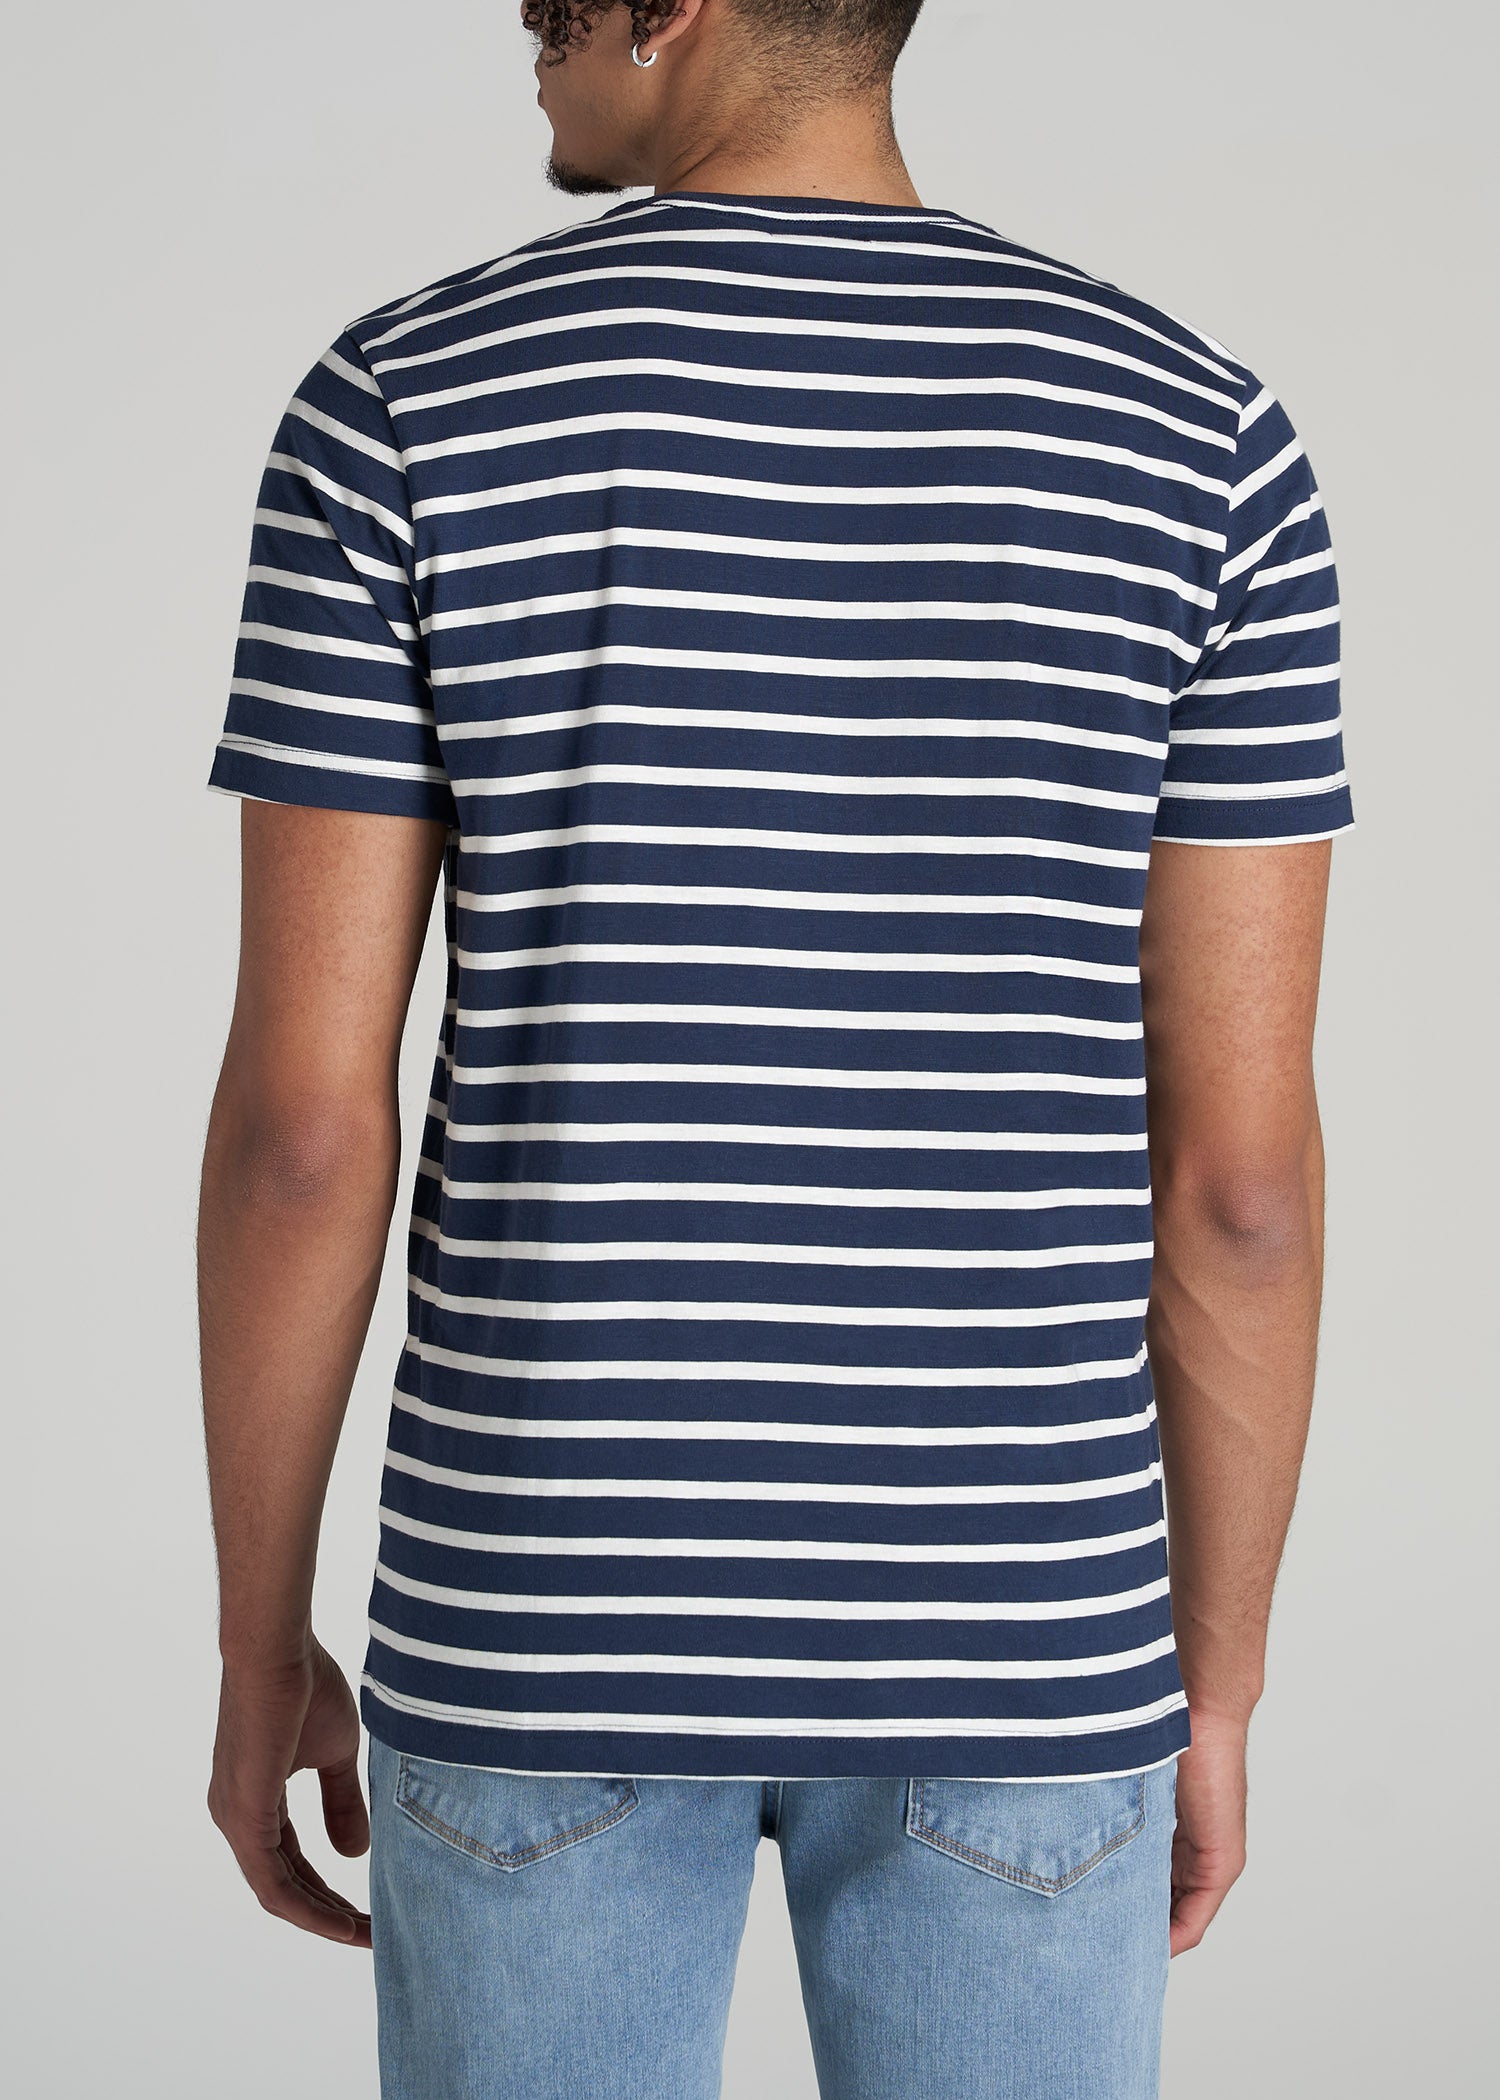 Stripes Cotton Linen Blend Super Slim Fit Mens Casual Shirt